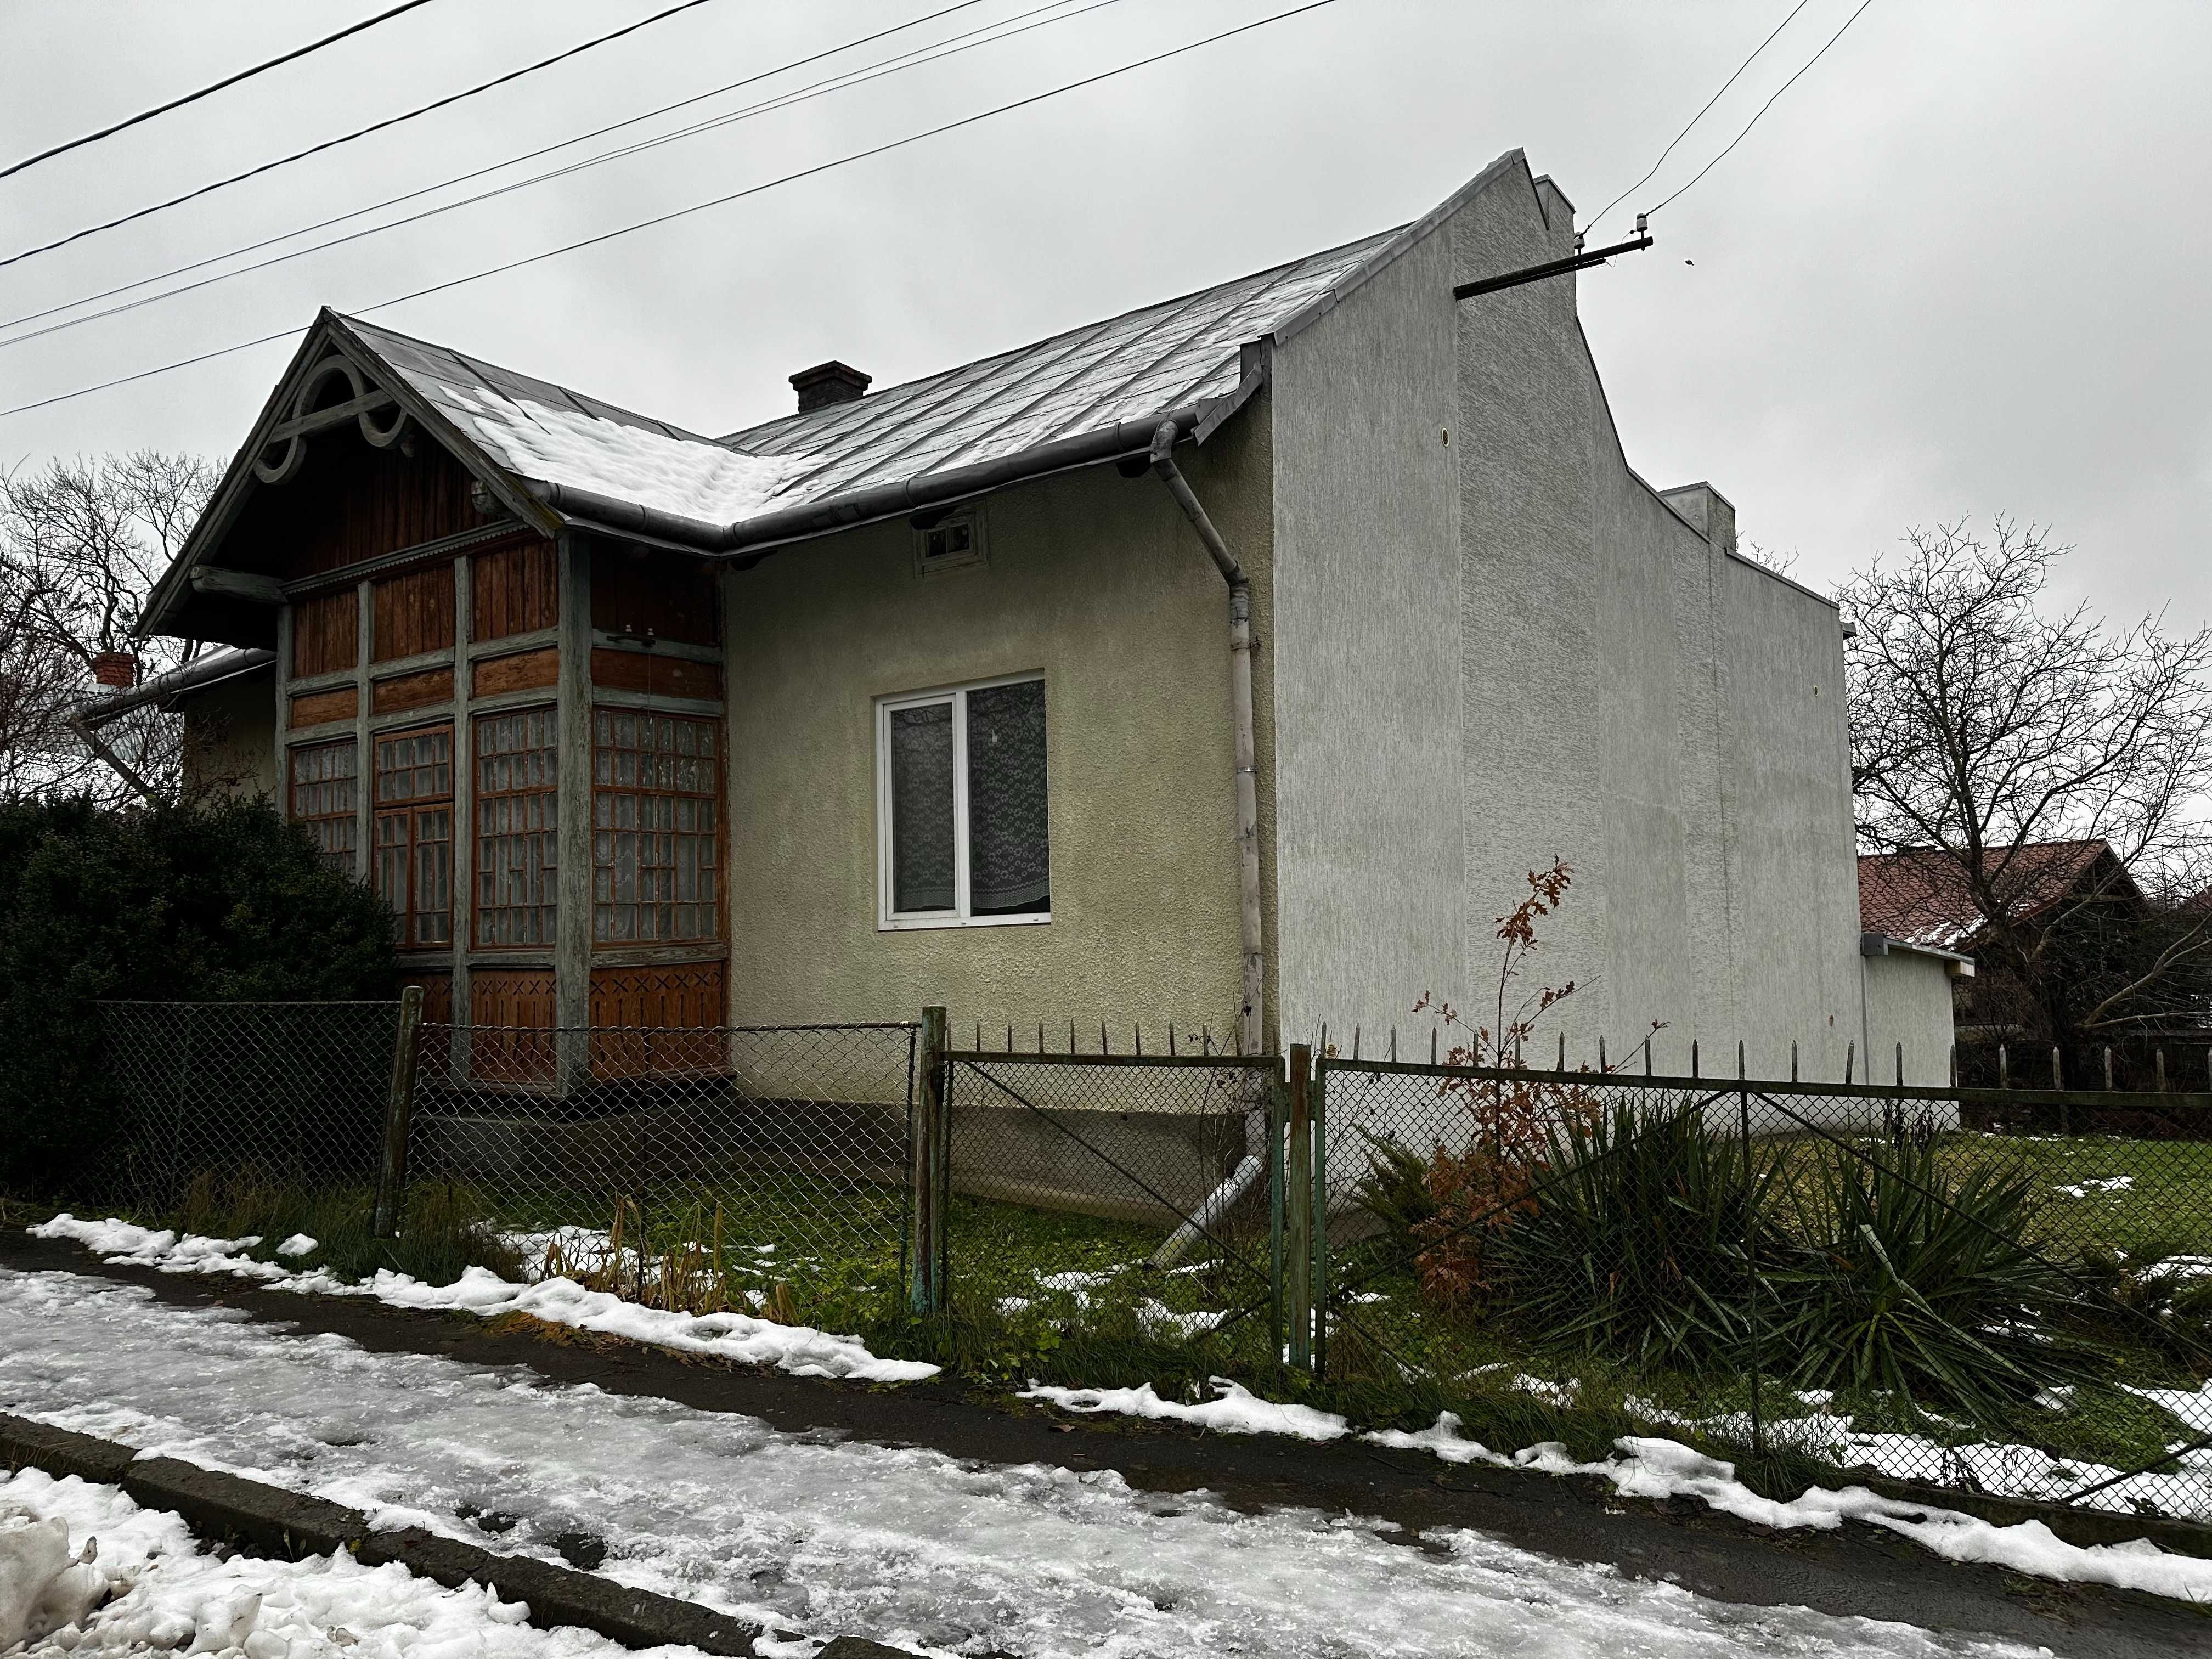 Продається житловий будинок у м.Дрогобич